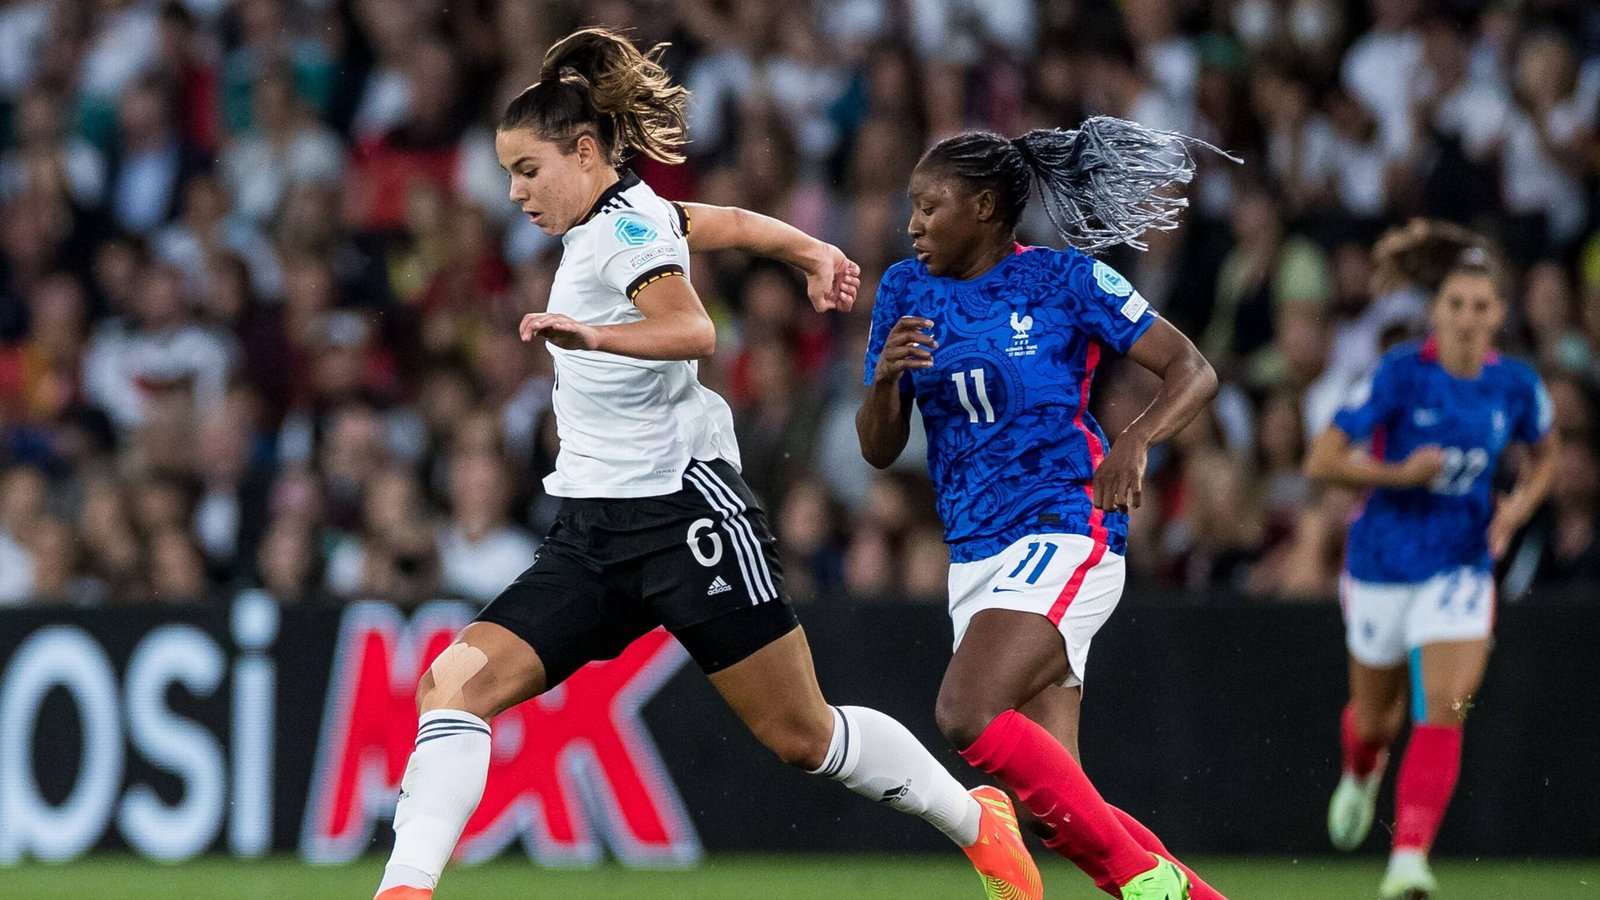 Die 20 Jahre alte Lena Oberdorf überzeugte im Spiel gegen Frankreich am Mittwochabend.Foto: IMAGO/Beautiful Sports/IMAGO/BEAUTIFUL SPORTS/Wunderl